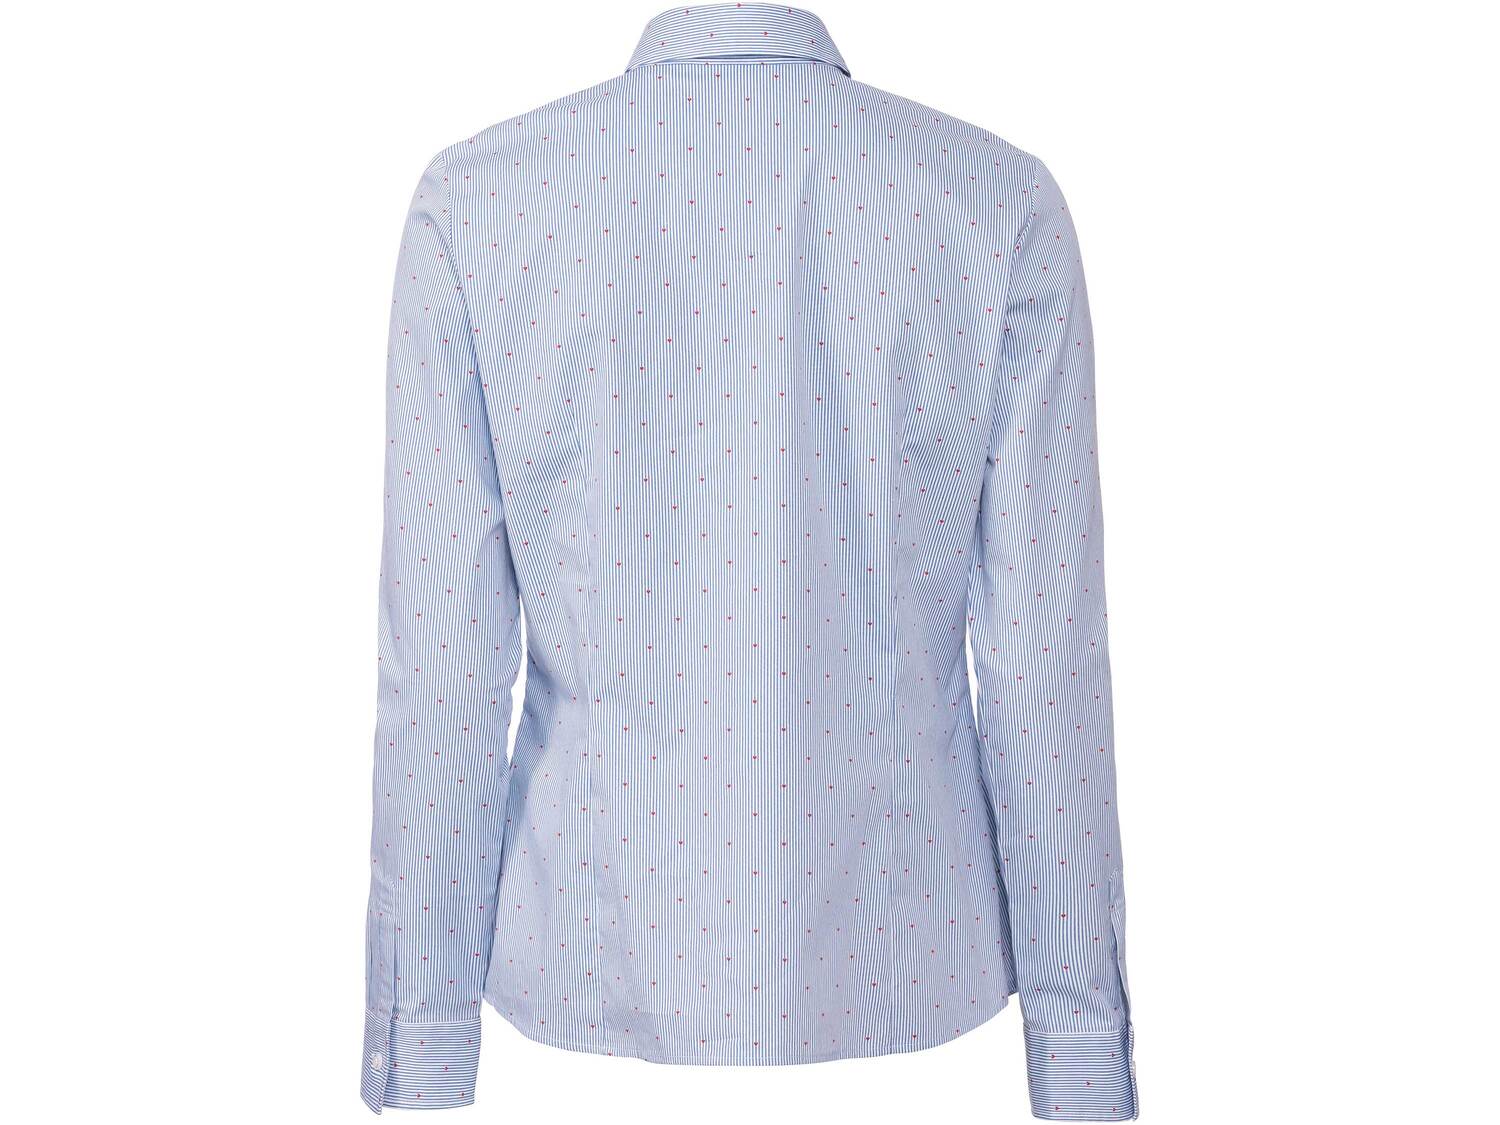 Bluzka damska z bawełny Esmara, cena 44,00 PLN 
- rozmiary: 36-42
- 100% bawełny
- ...